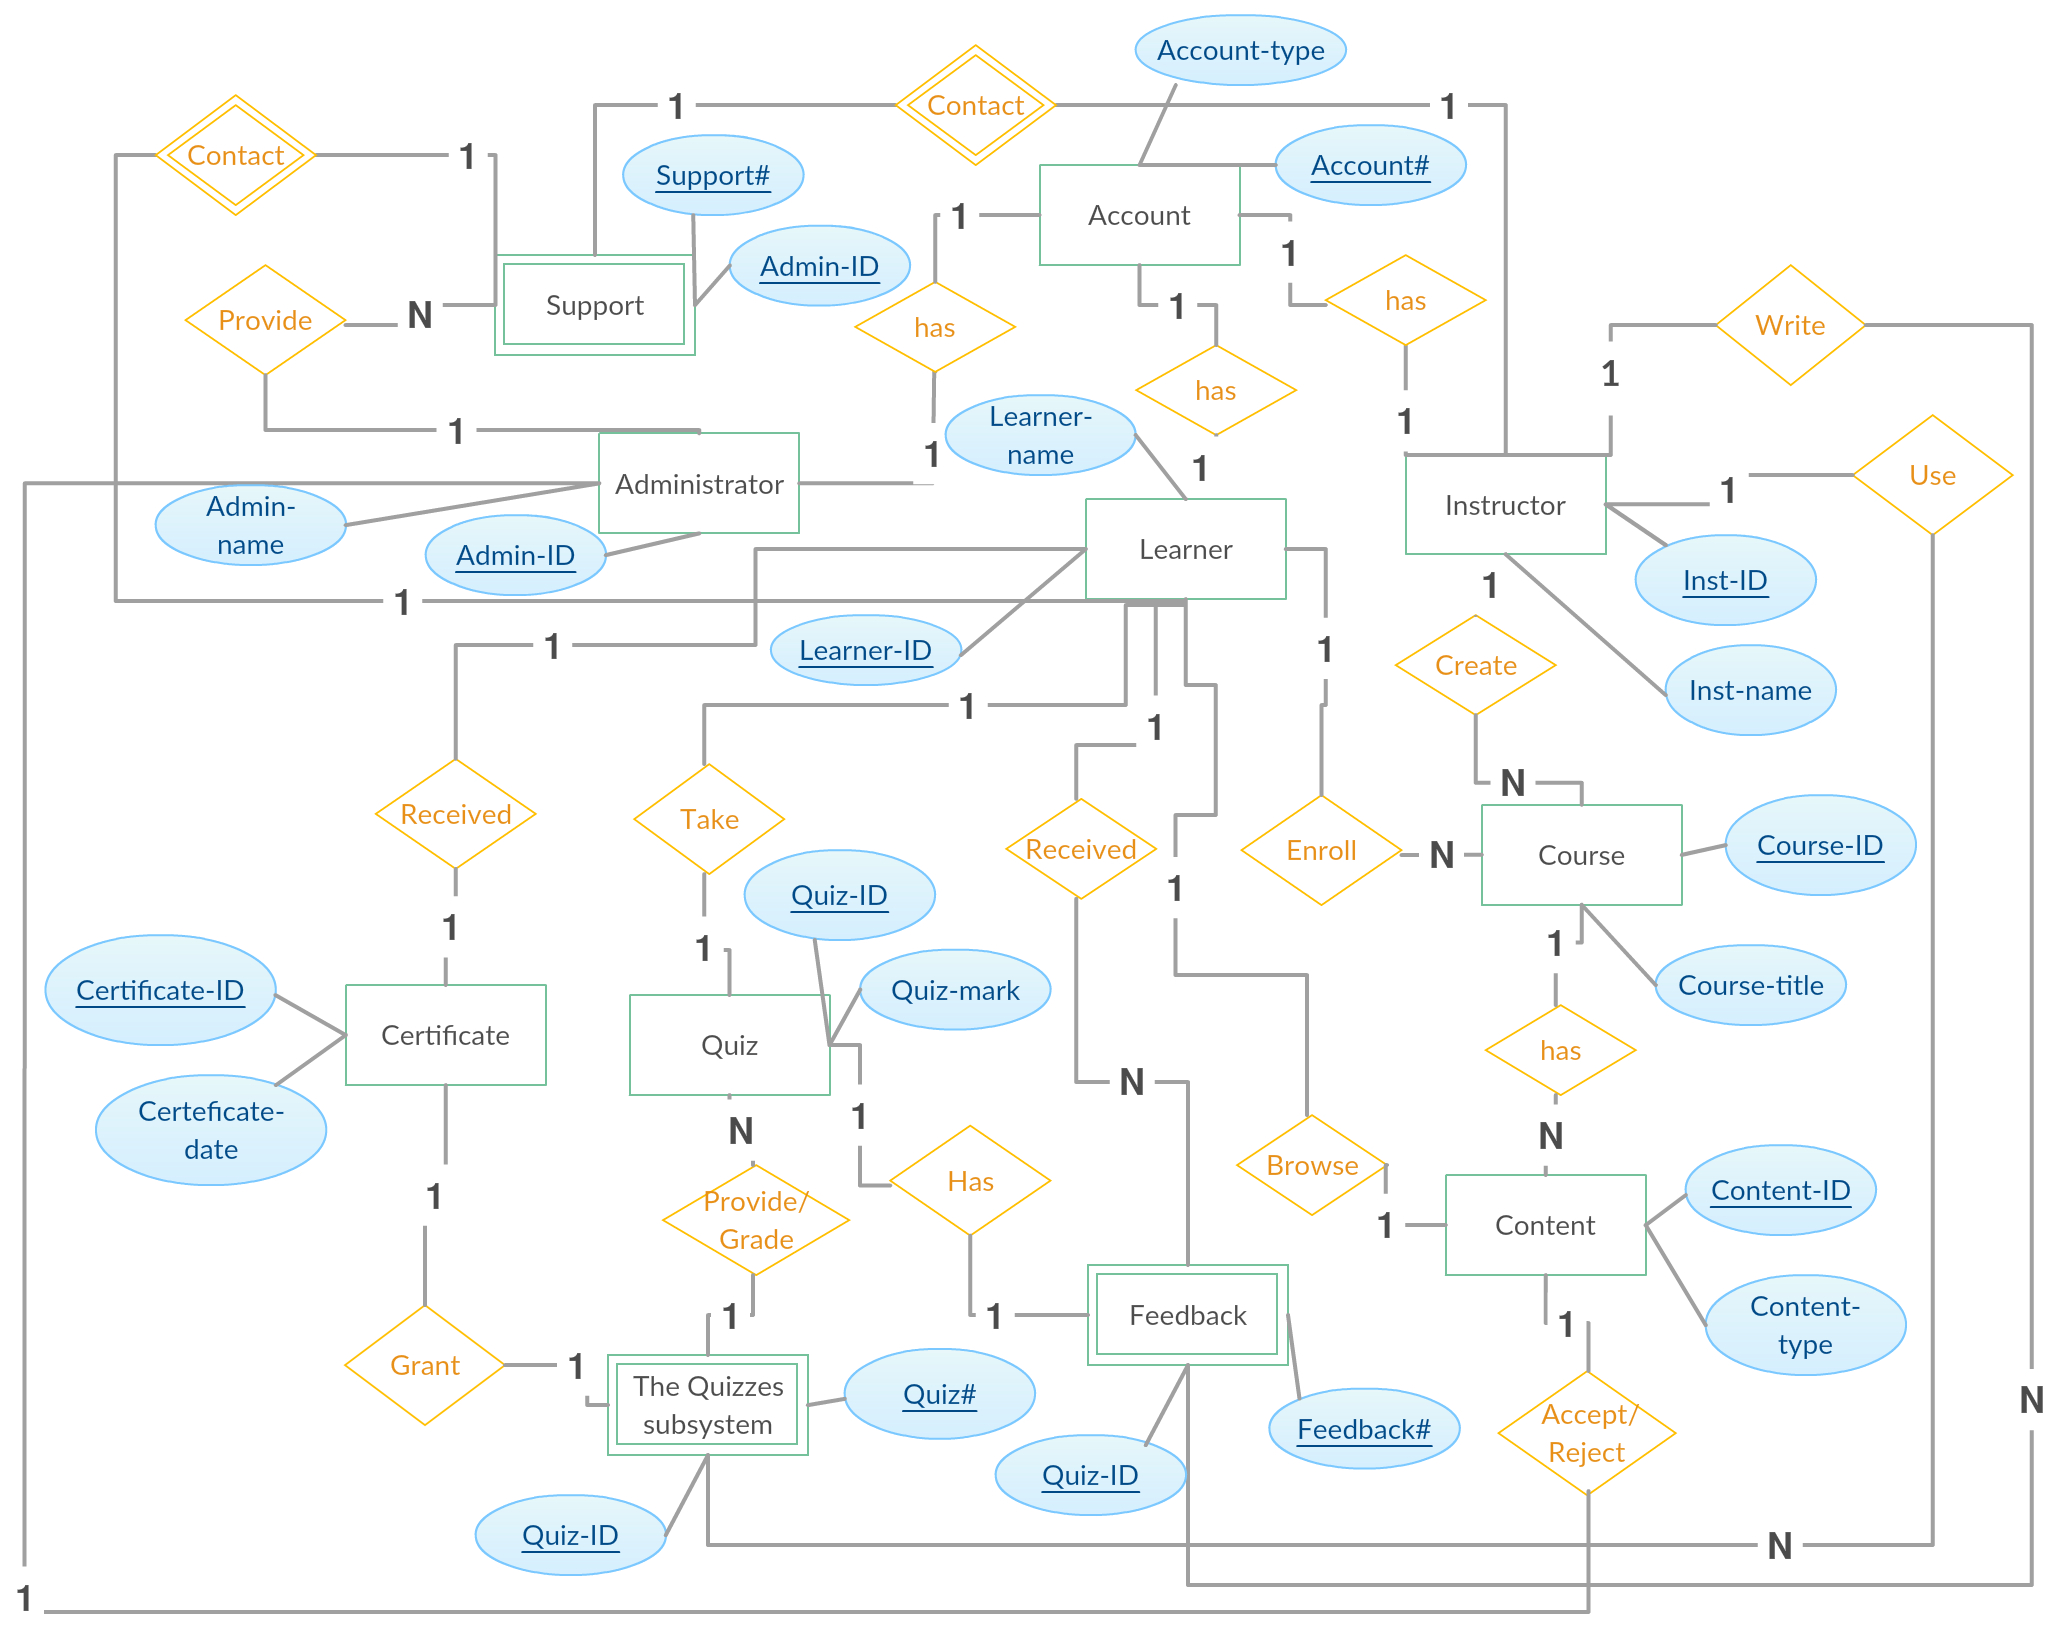 Entity Relationship Diagram (Er Diagram) Of E-Learning intended for E Voting Er Diagram